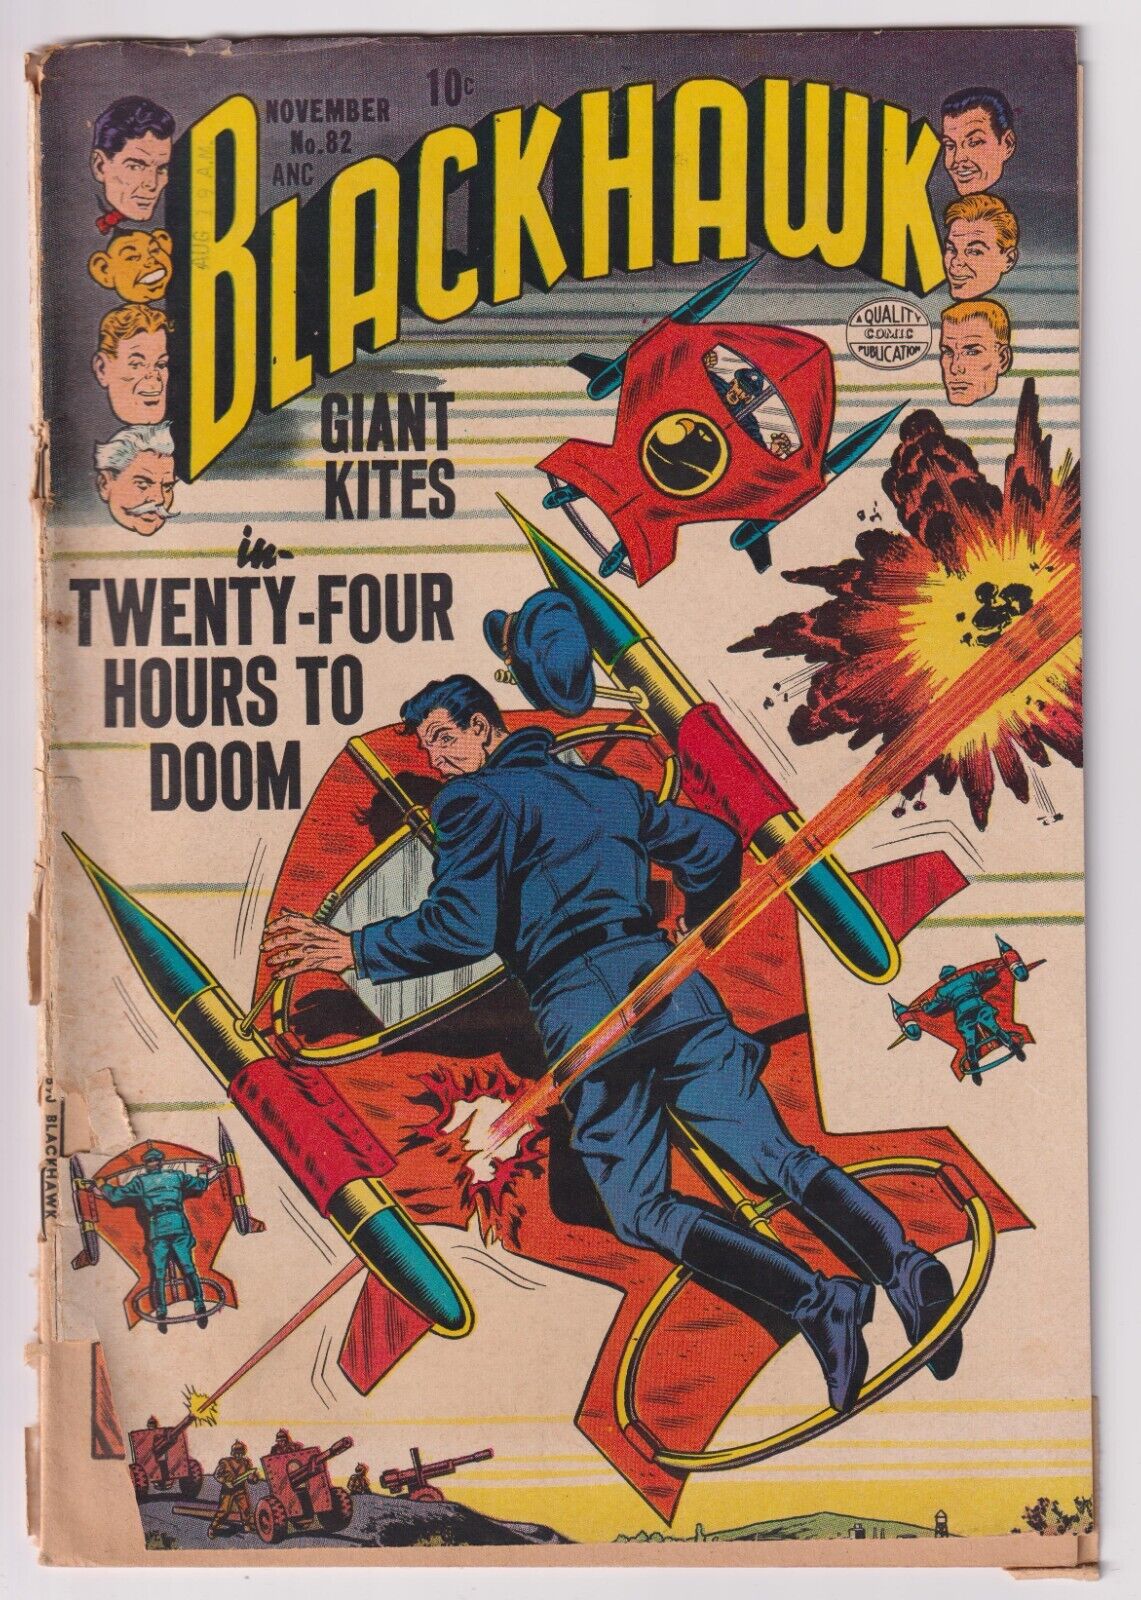 Blackhawk #82 (1954) FR/GD 1.5 Quality Comics Dick Dillin & Chuck Cuidera Cover